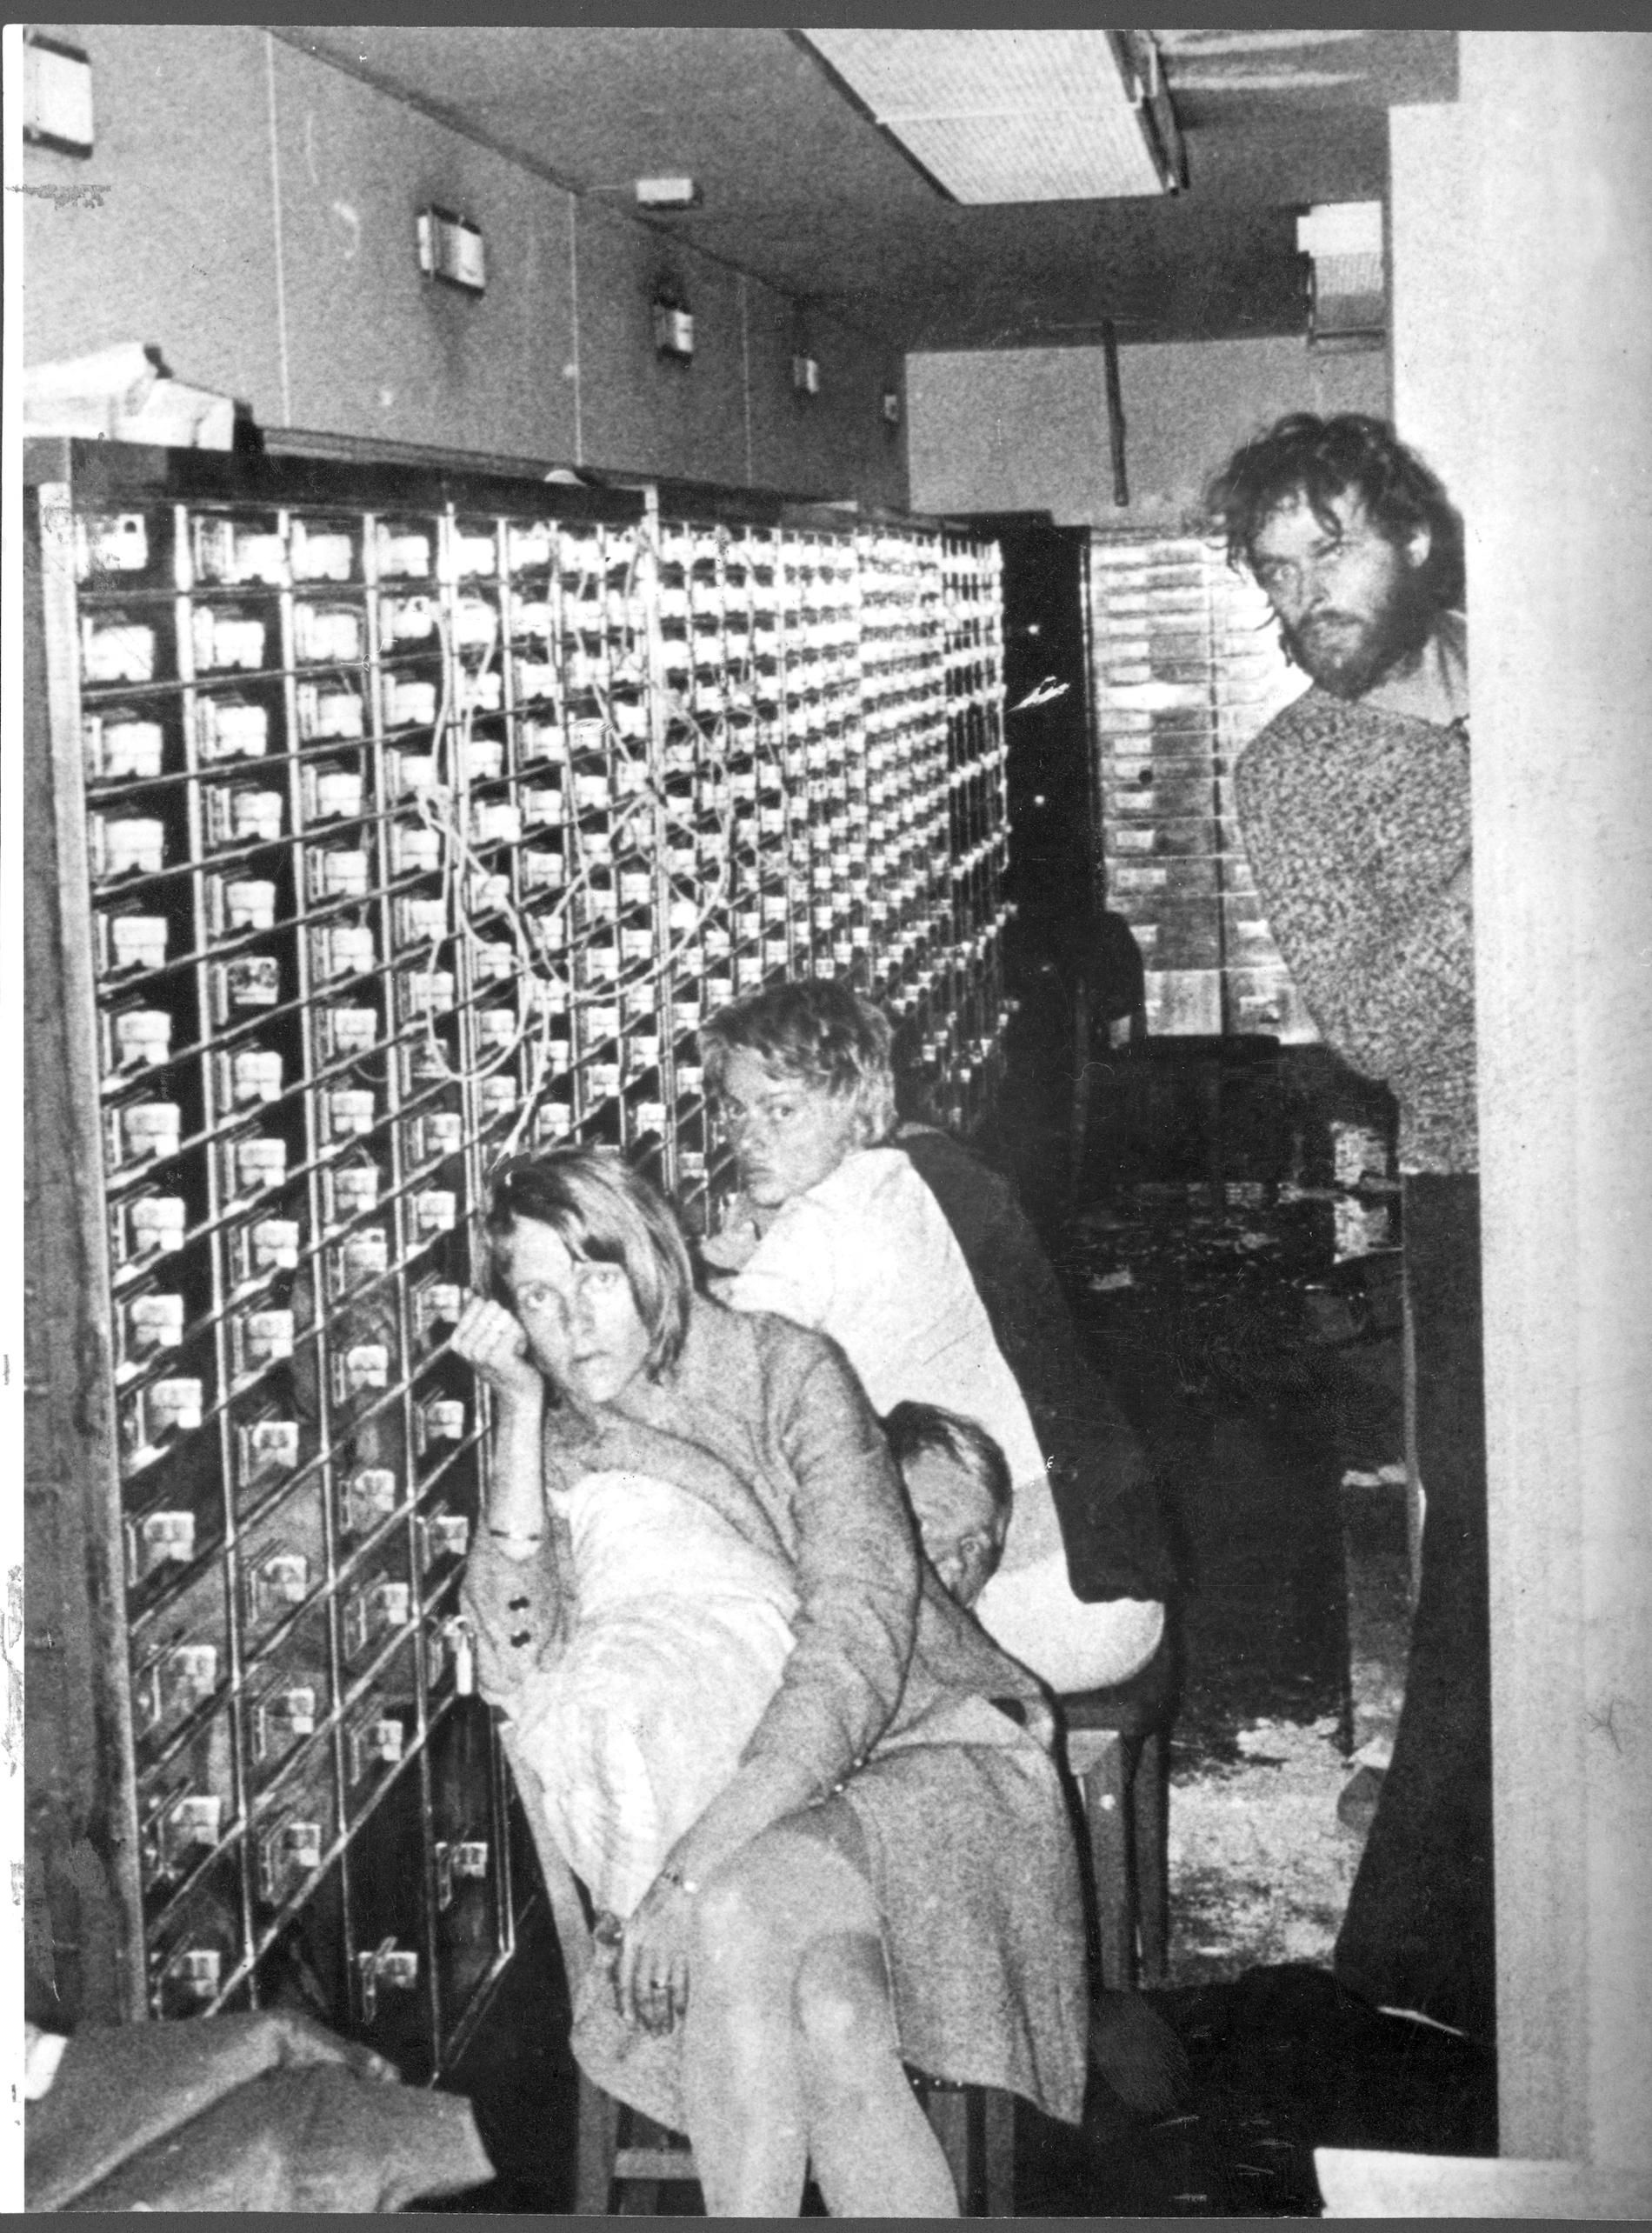 Den kanske mest kända bilden från Norrmalmstorgsdramat 1973, tagen av en poliskamera som sänkts ner i bankvalvet och visar Clark Olofsson, till höger, och gisslan till vänster.